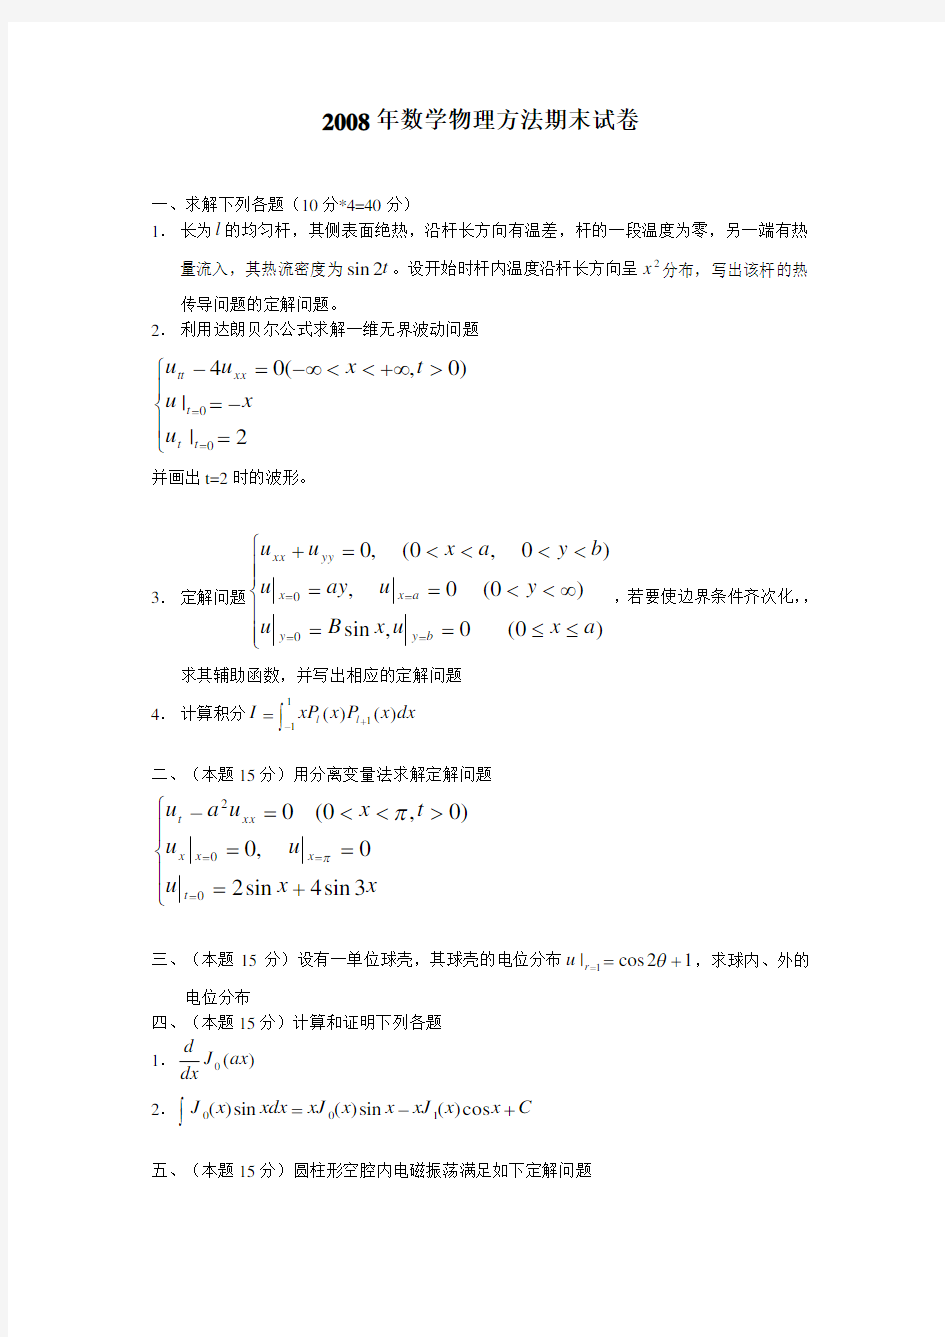 武大数学物理方法期末考试试题-2008